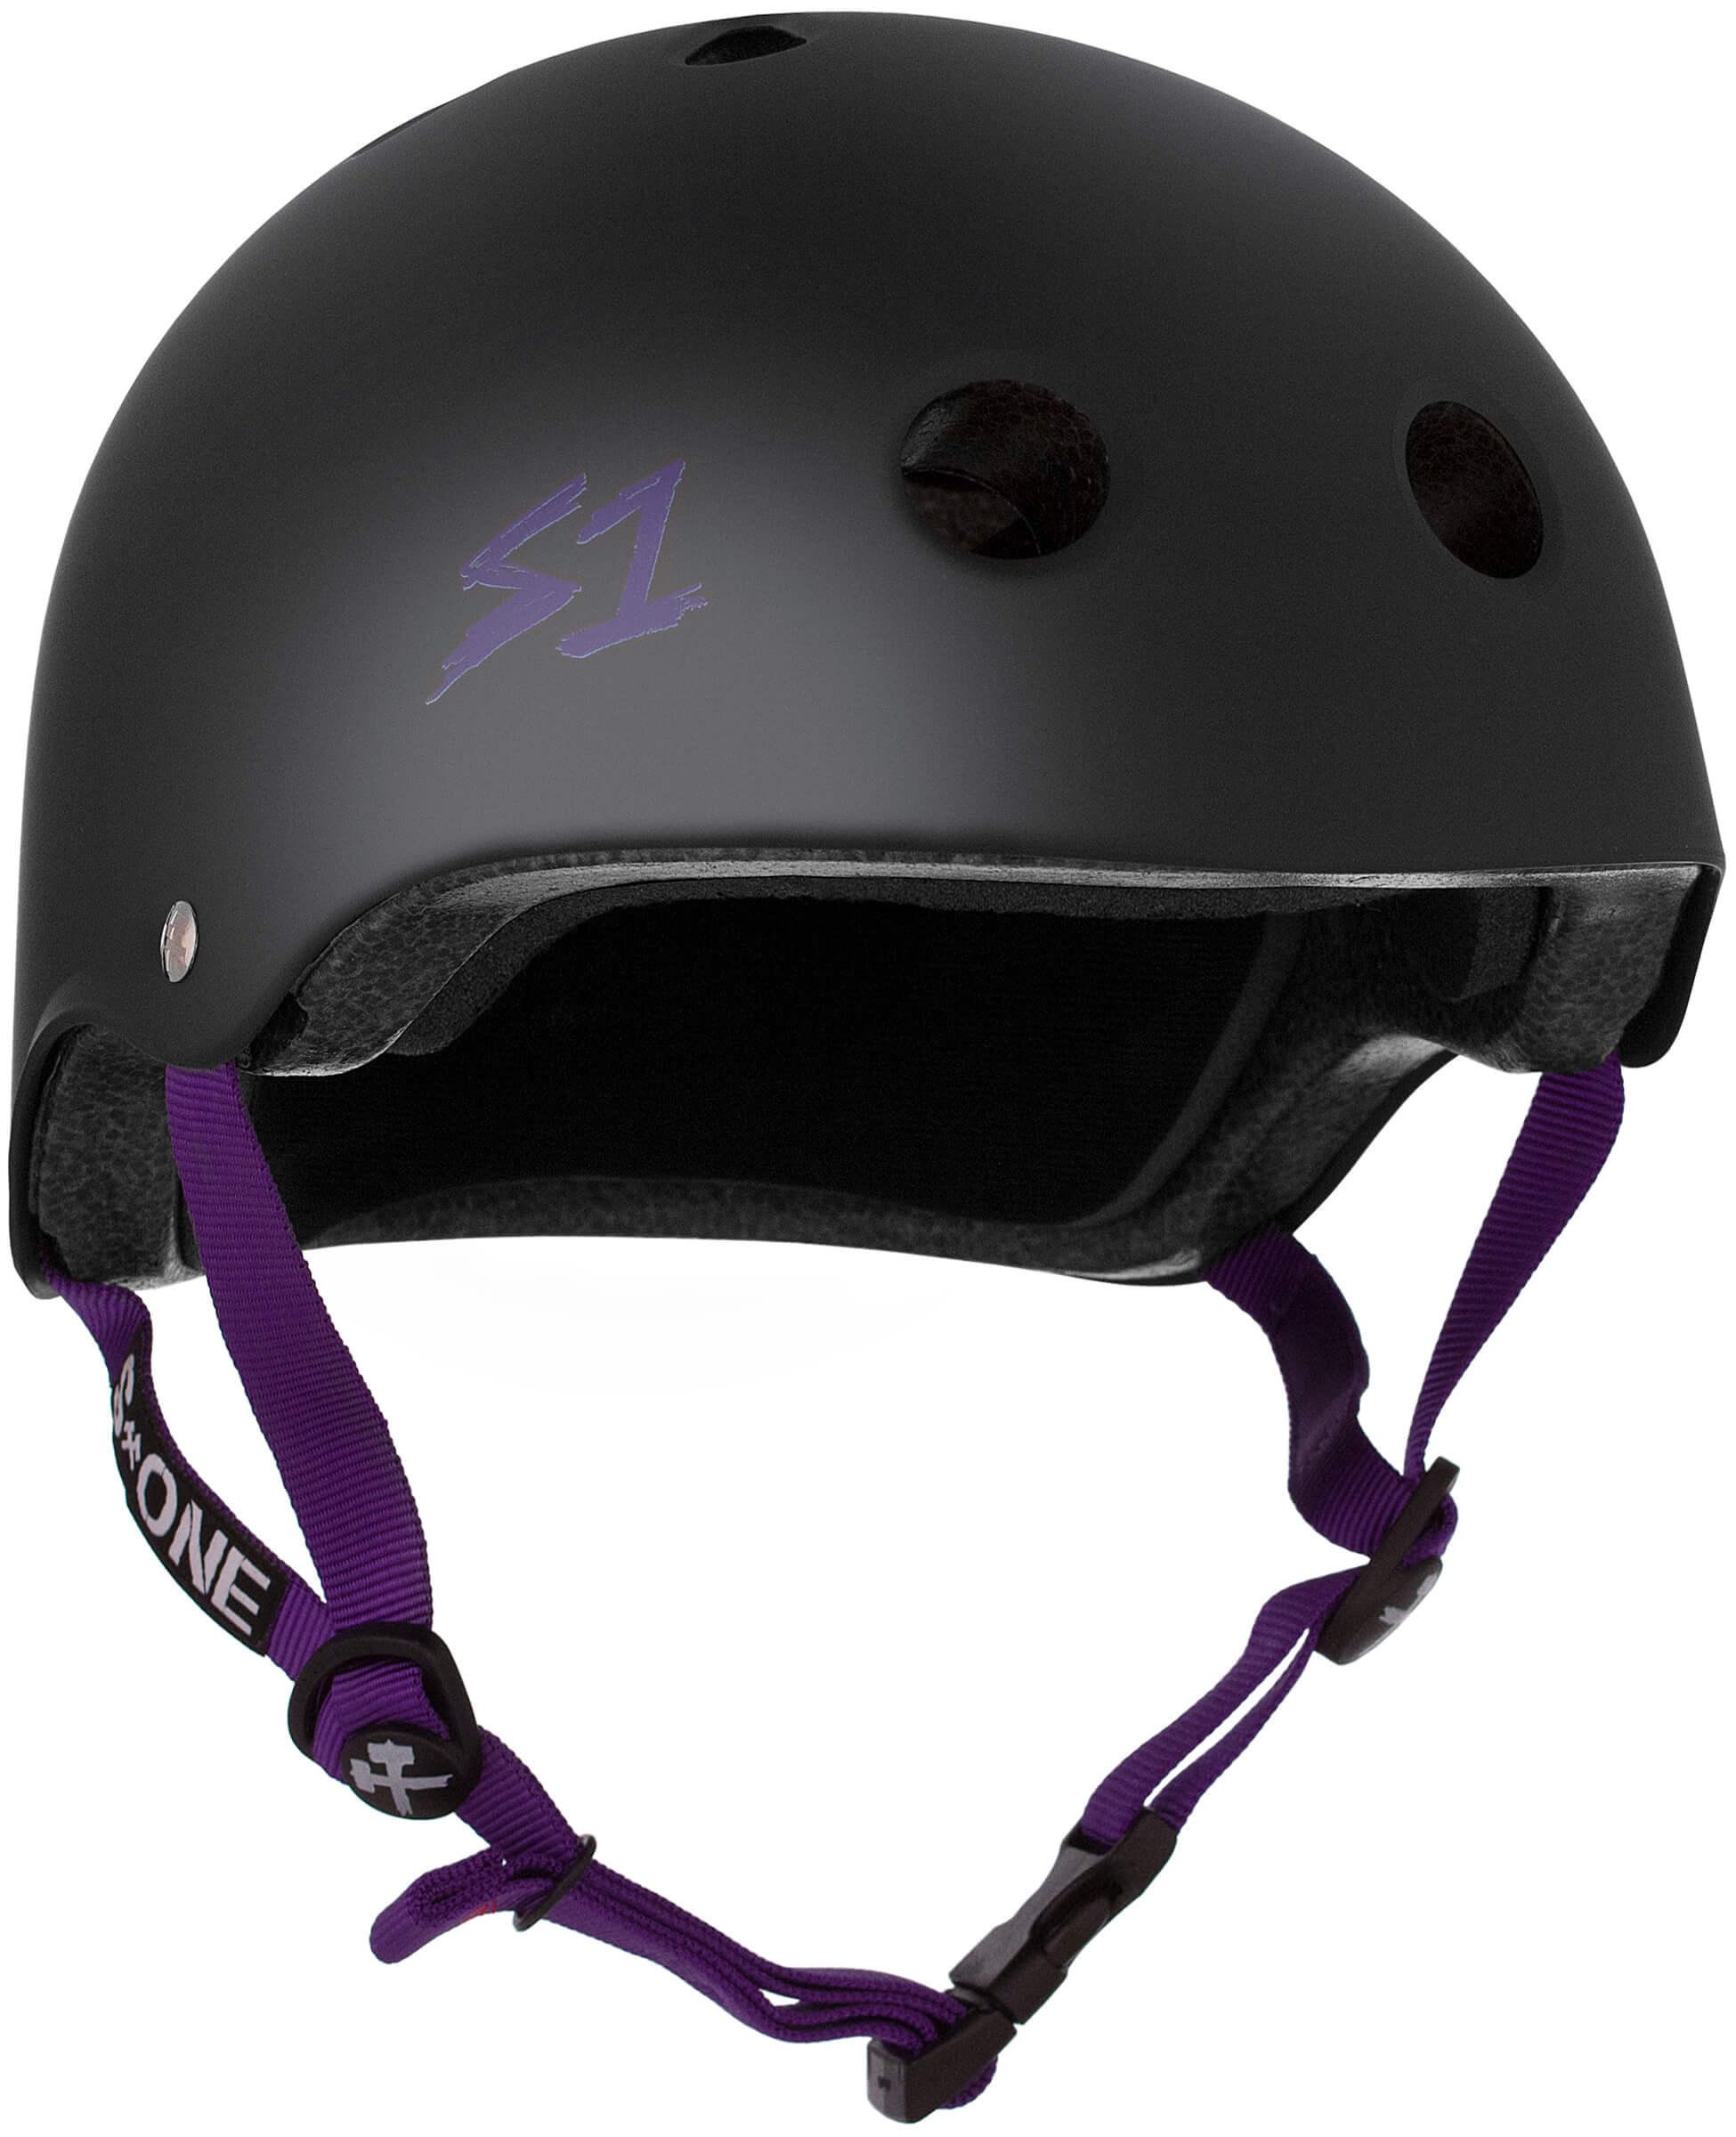 S1 Lifer Helmet - Casque noir mât avec sangles violet